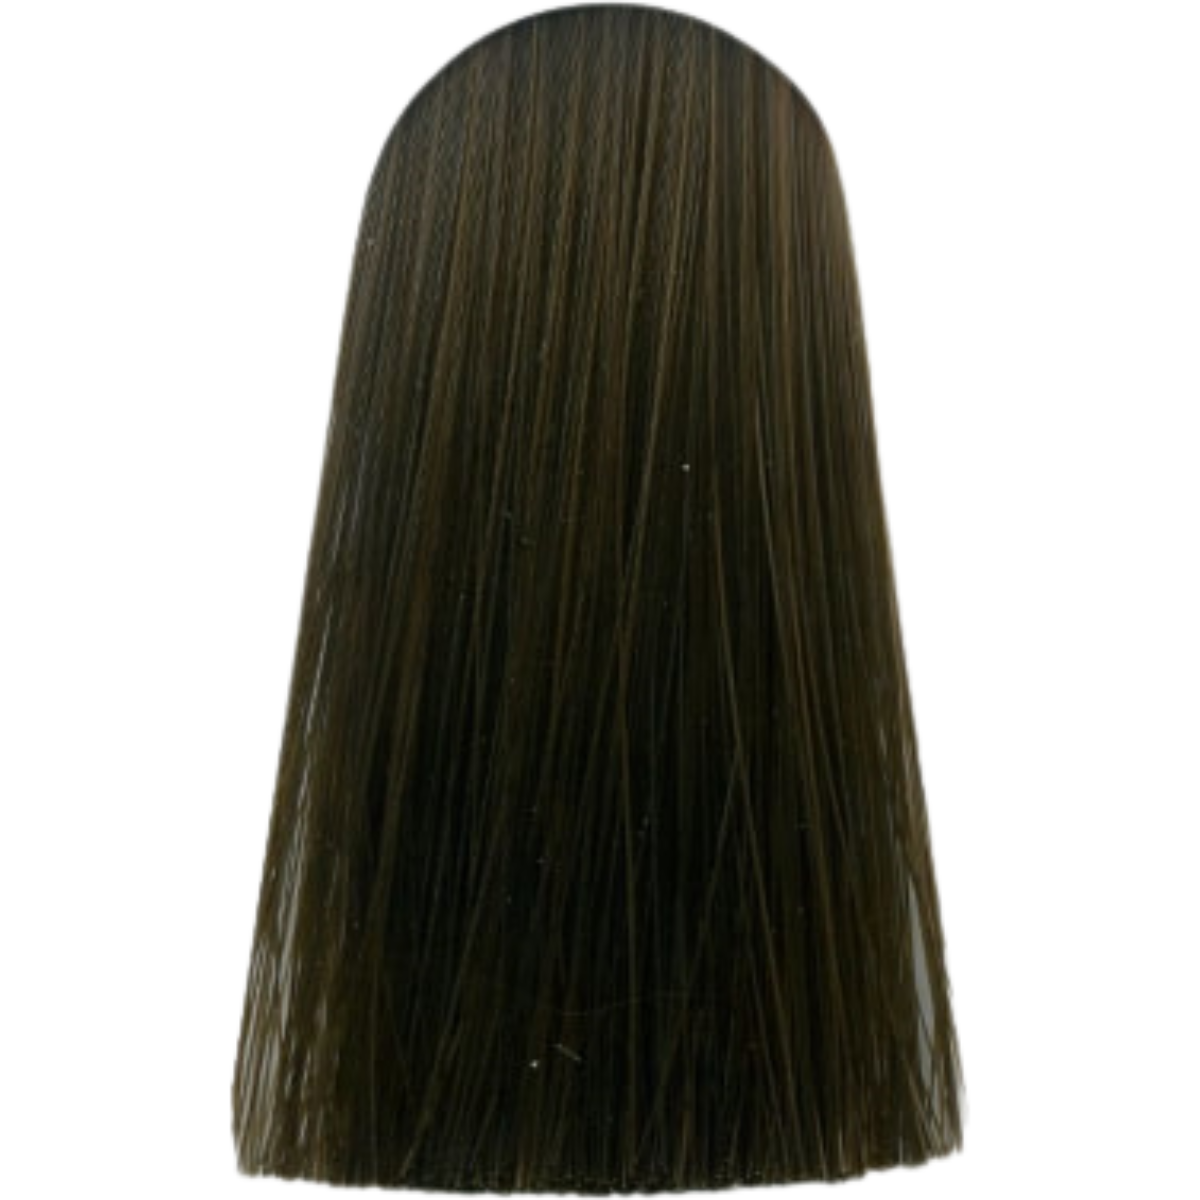 צבע שיער 5.0 LIGHT BROWN NATURAL אינדולה INDOLA צבע בסיס לשיער 60 גרם